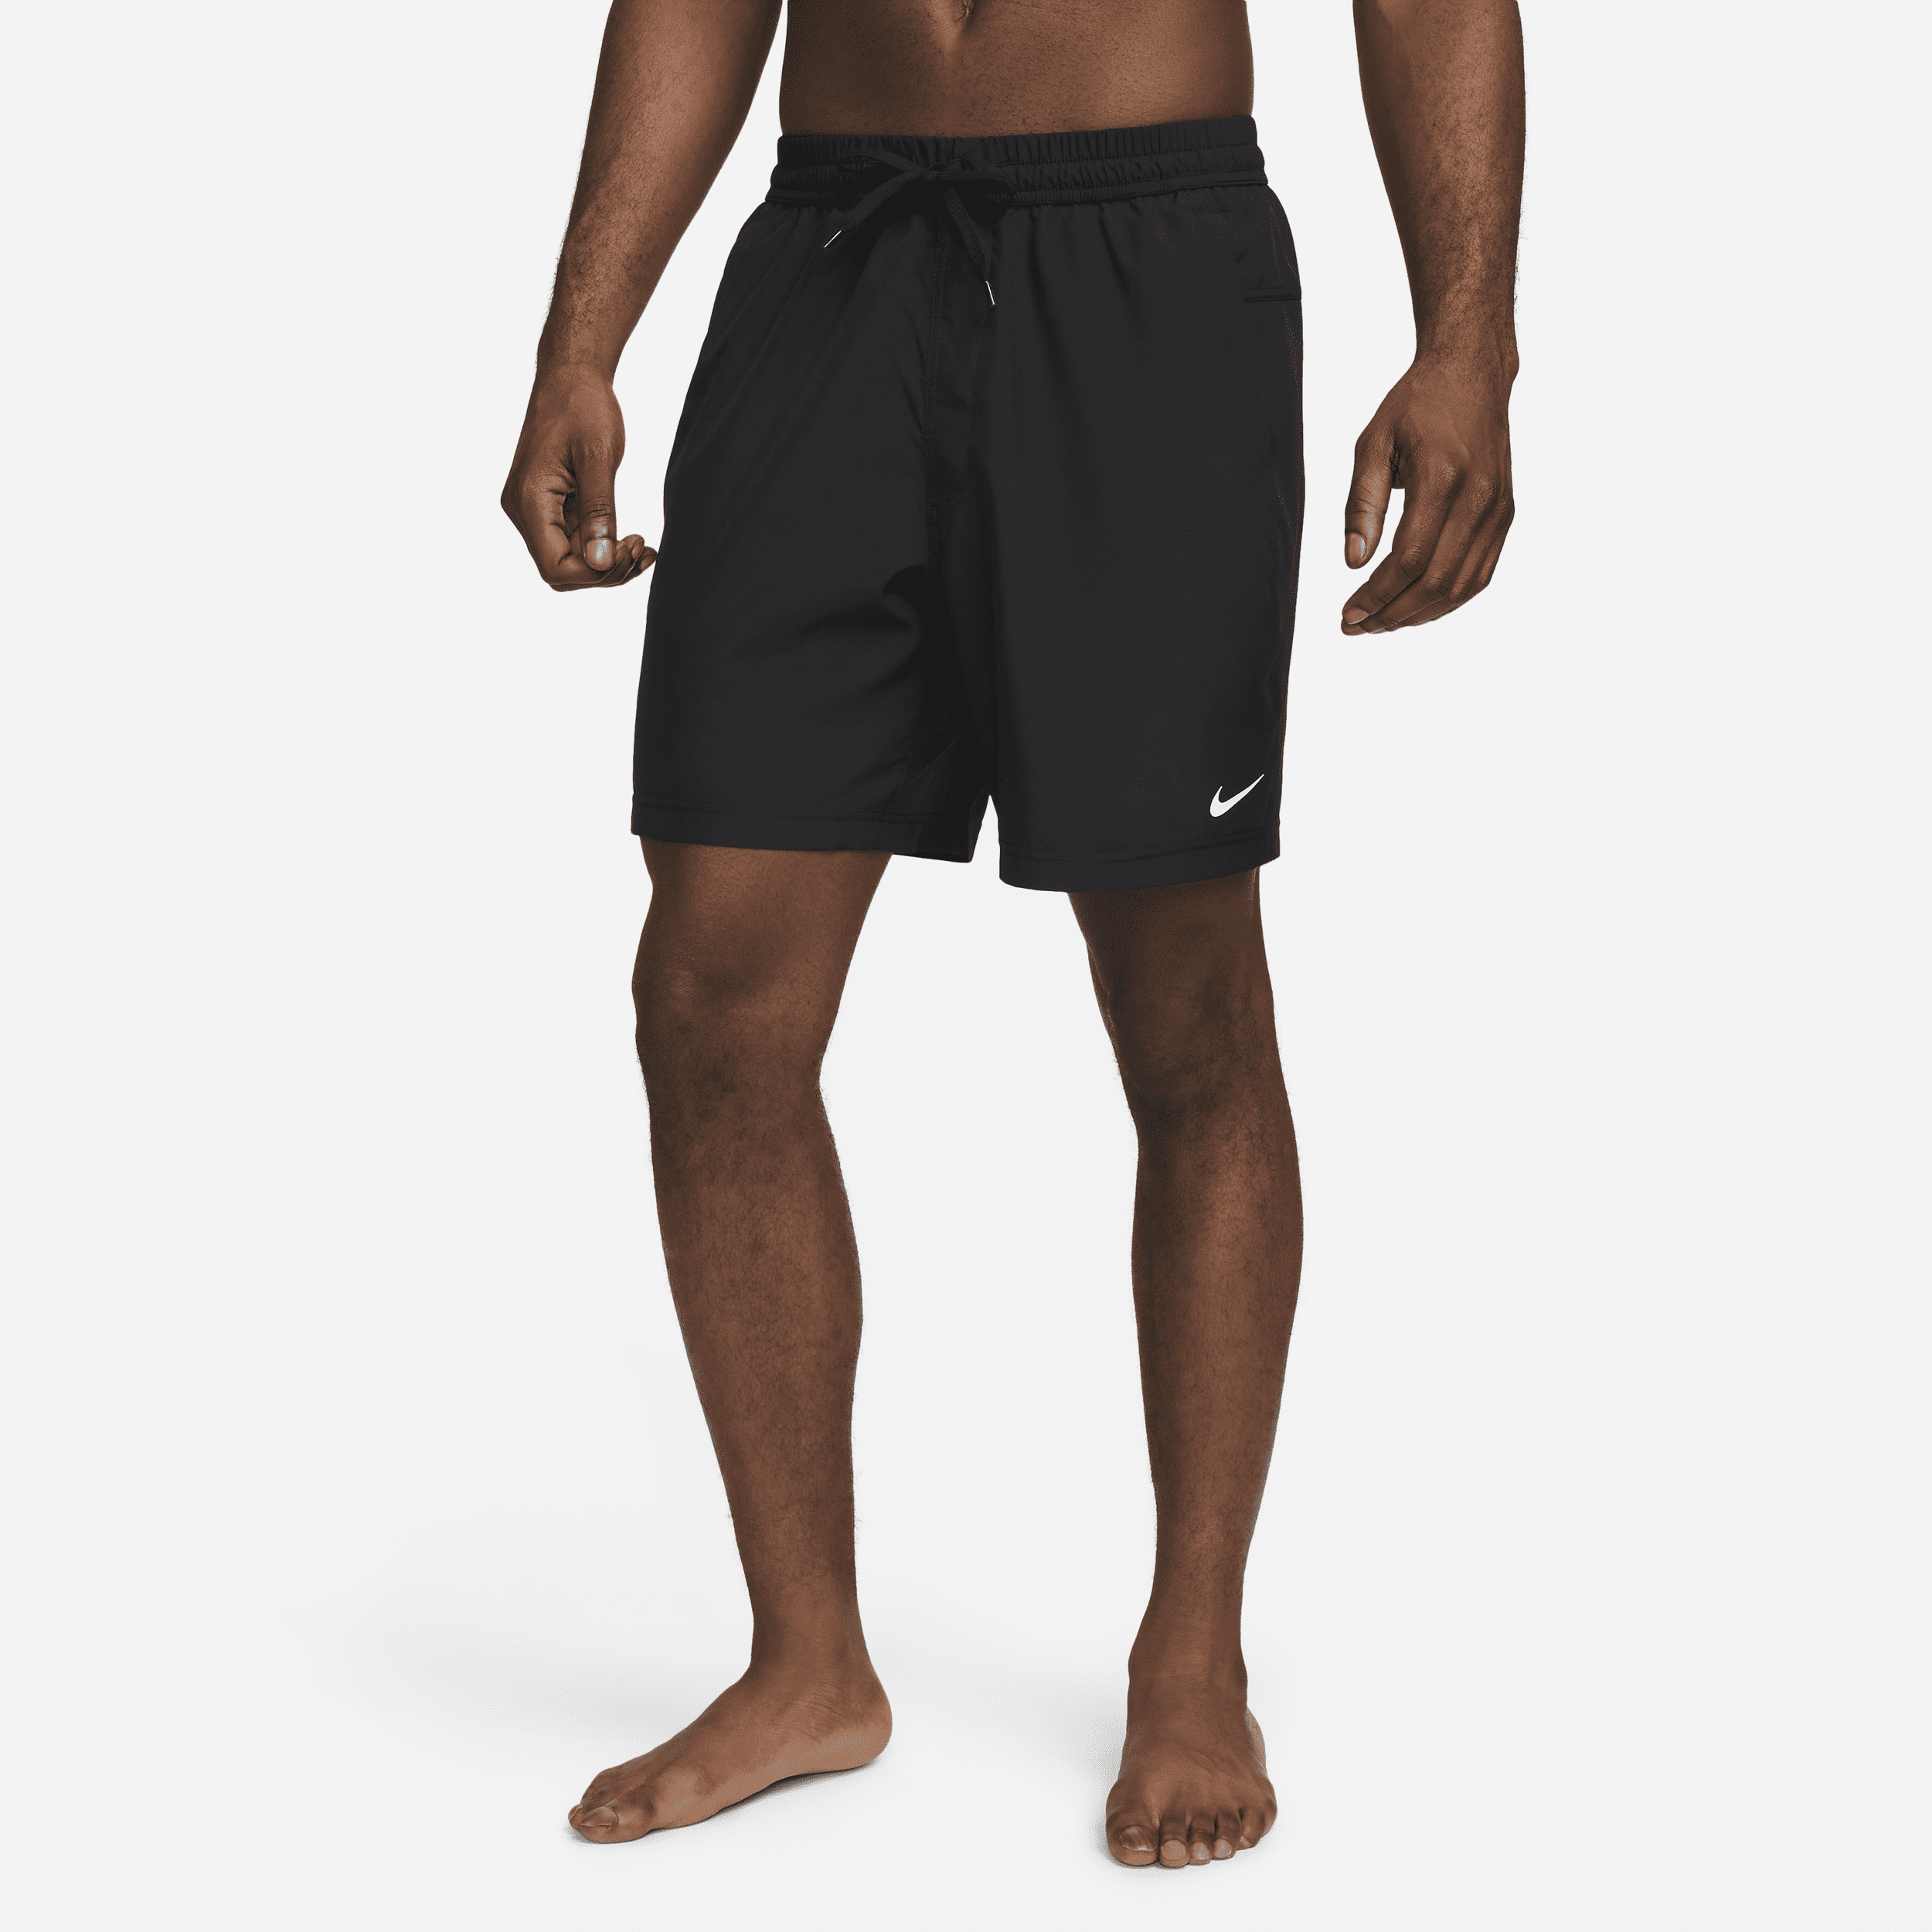 Shorts versatili Dri-FIT non foderati 18 cm Nike Form – Uomo - Nero